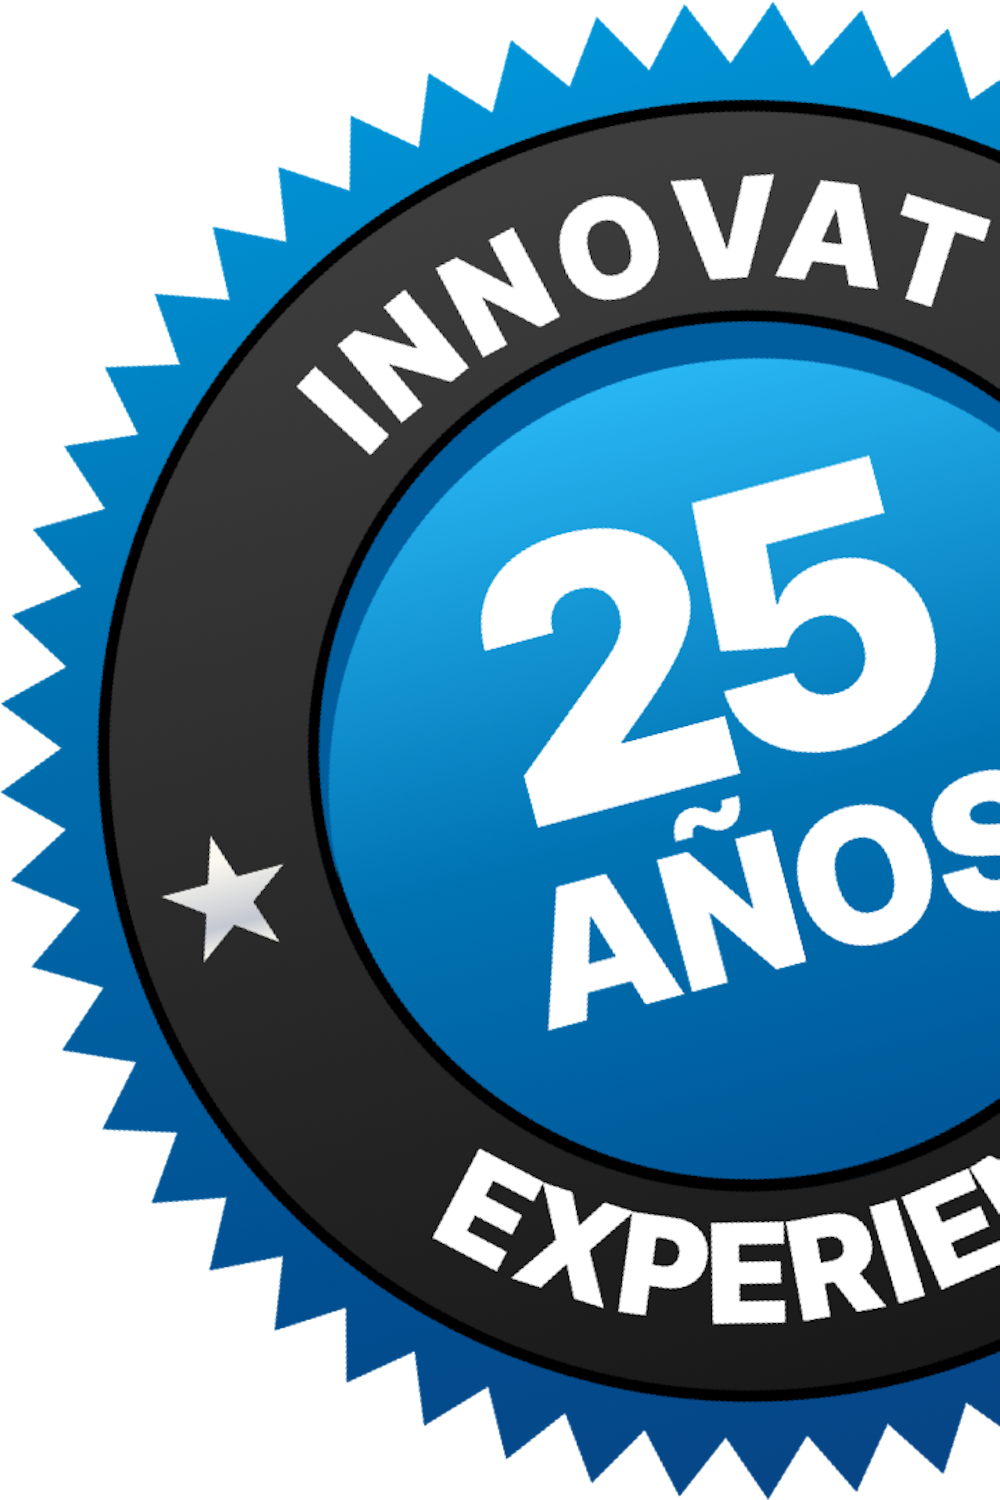 Experiencia innovar 25 años